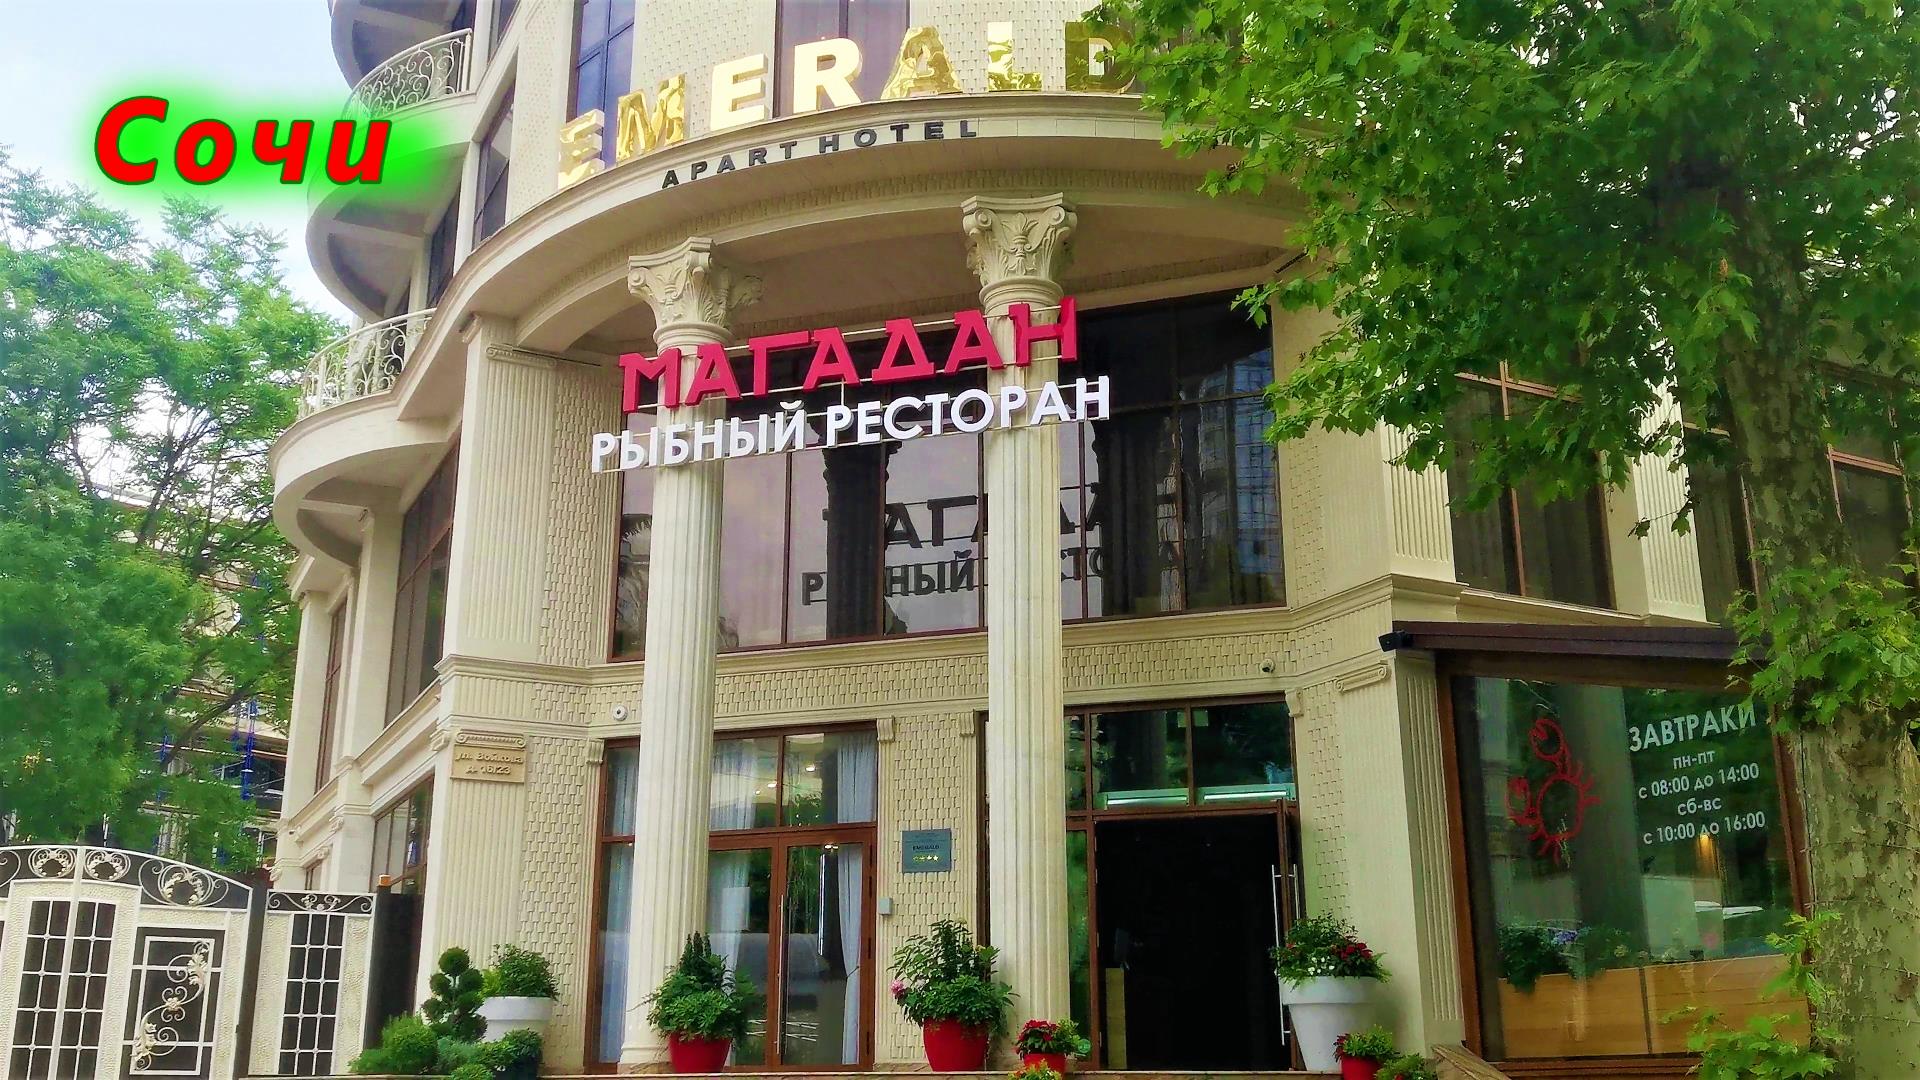 Рыбный ресторан "Магадан" в Сочи